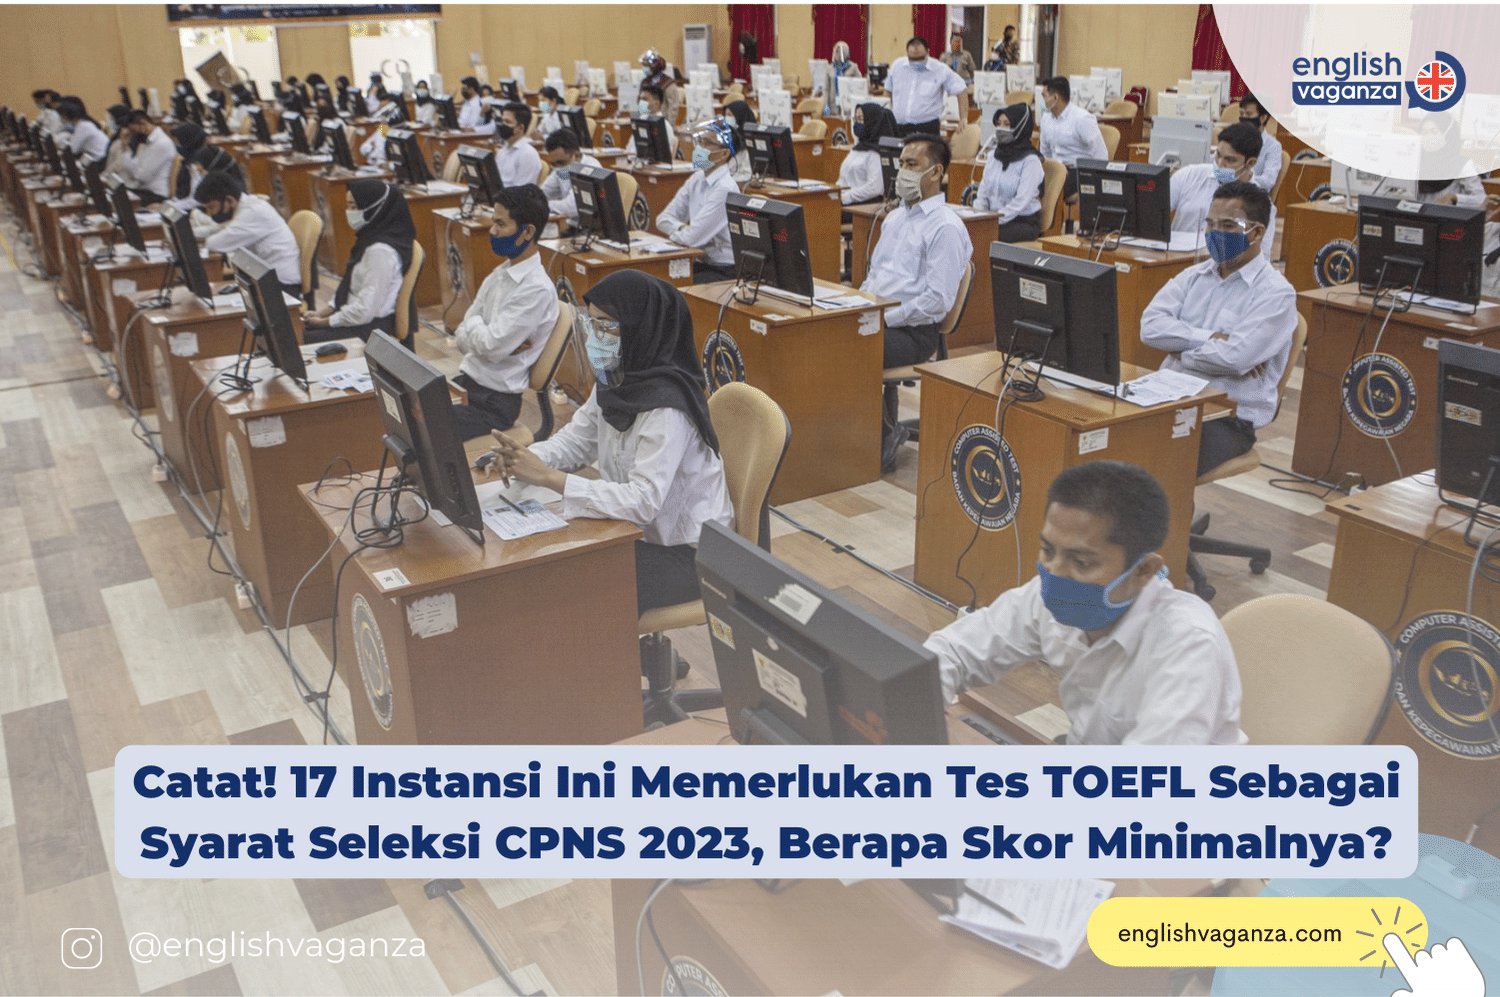 Catat! 17 Instansi Ini Memerlukan Tes TOEFL Sebagai Syarat Seleksi CPNS 2023, Berapa Skor Minimalnya?